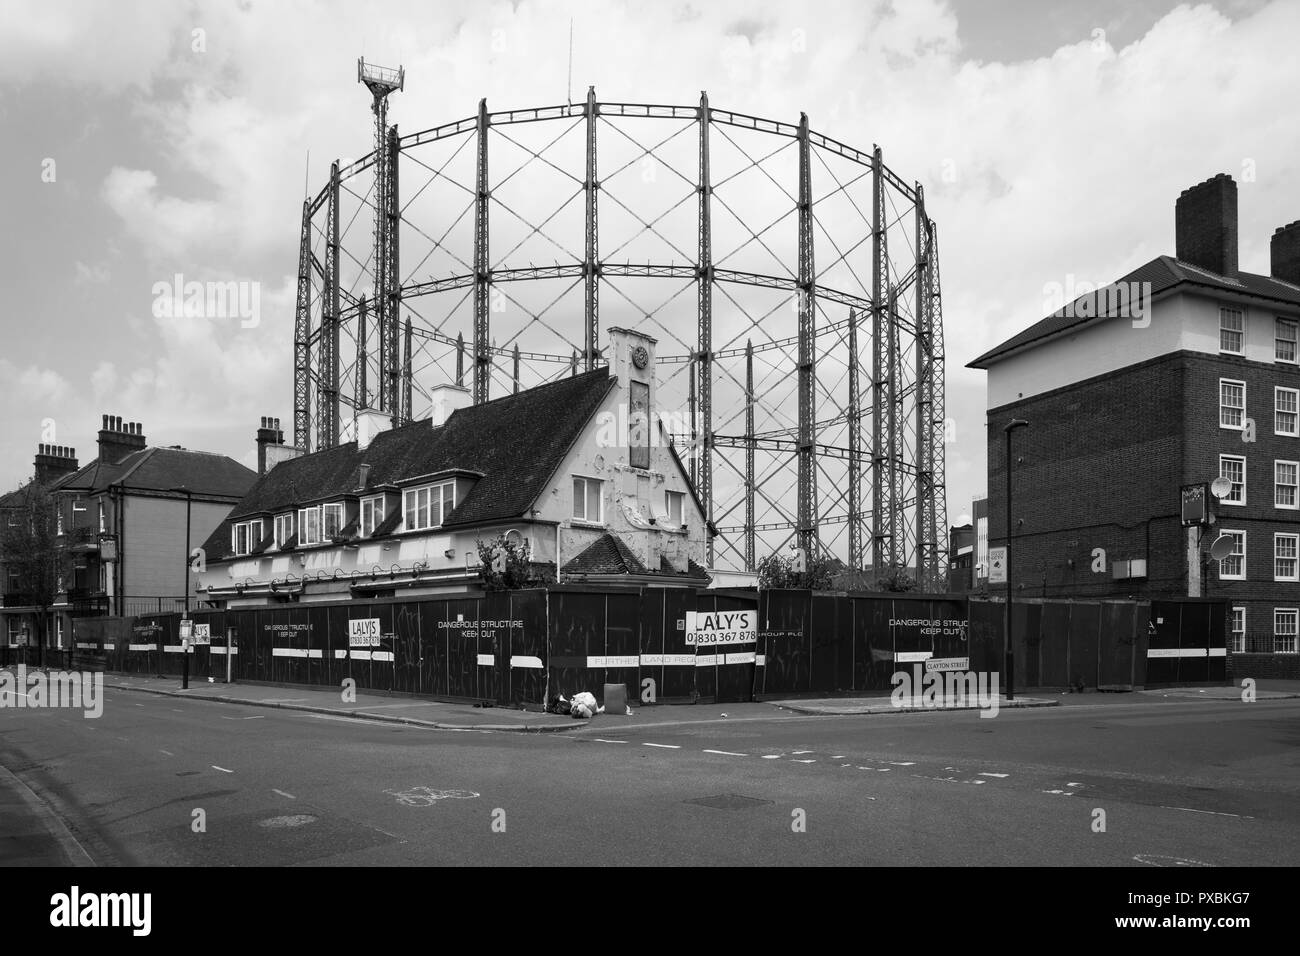 Abbandonata e decadendo Il Cricketers Pub accanto a Kennington Oval Cricket Ground, London. Foto Stock